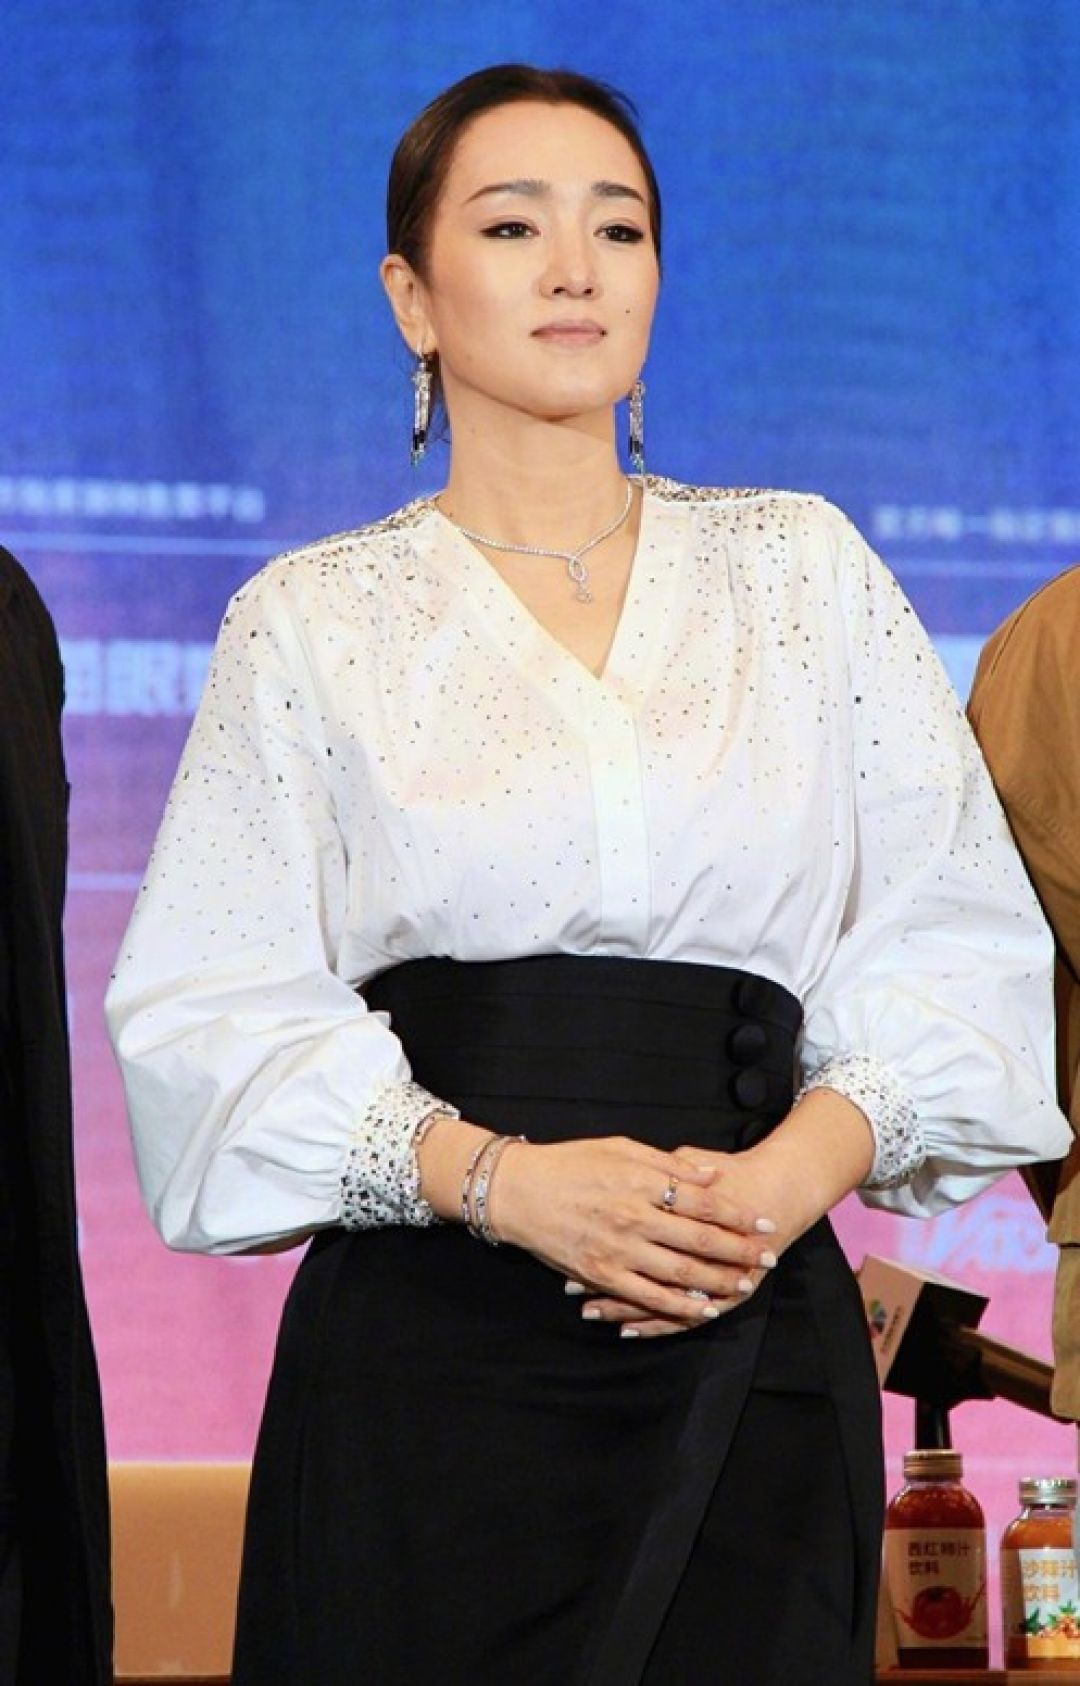 Belajar Menggunakan Setelah Hitam-Putih dari Aktris Gong Li-Image-5